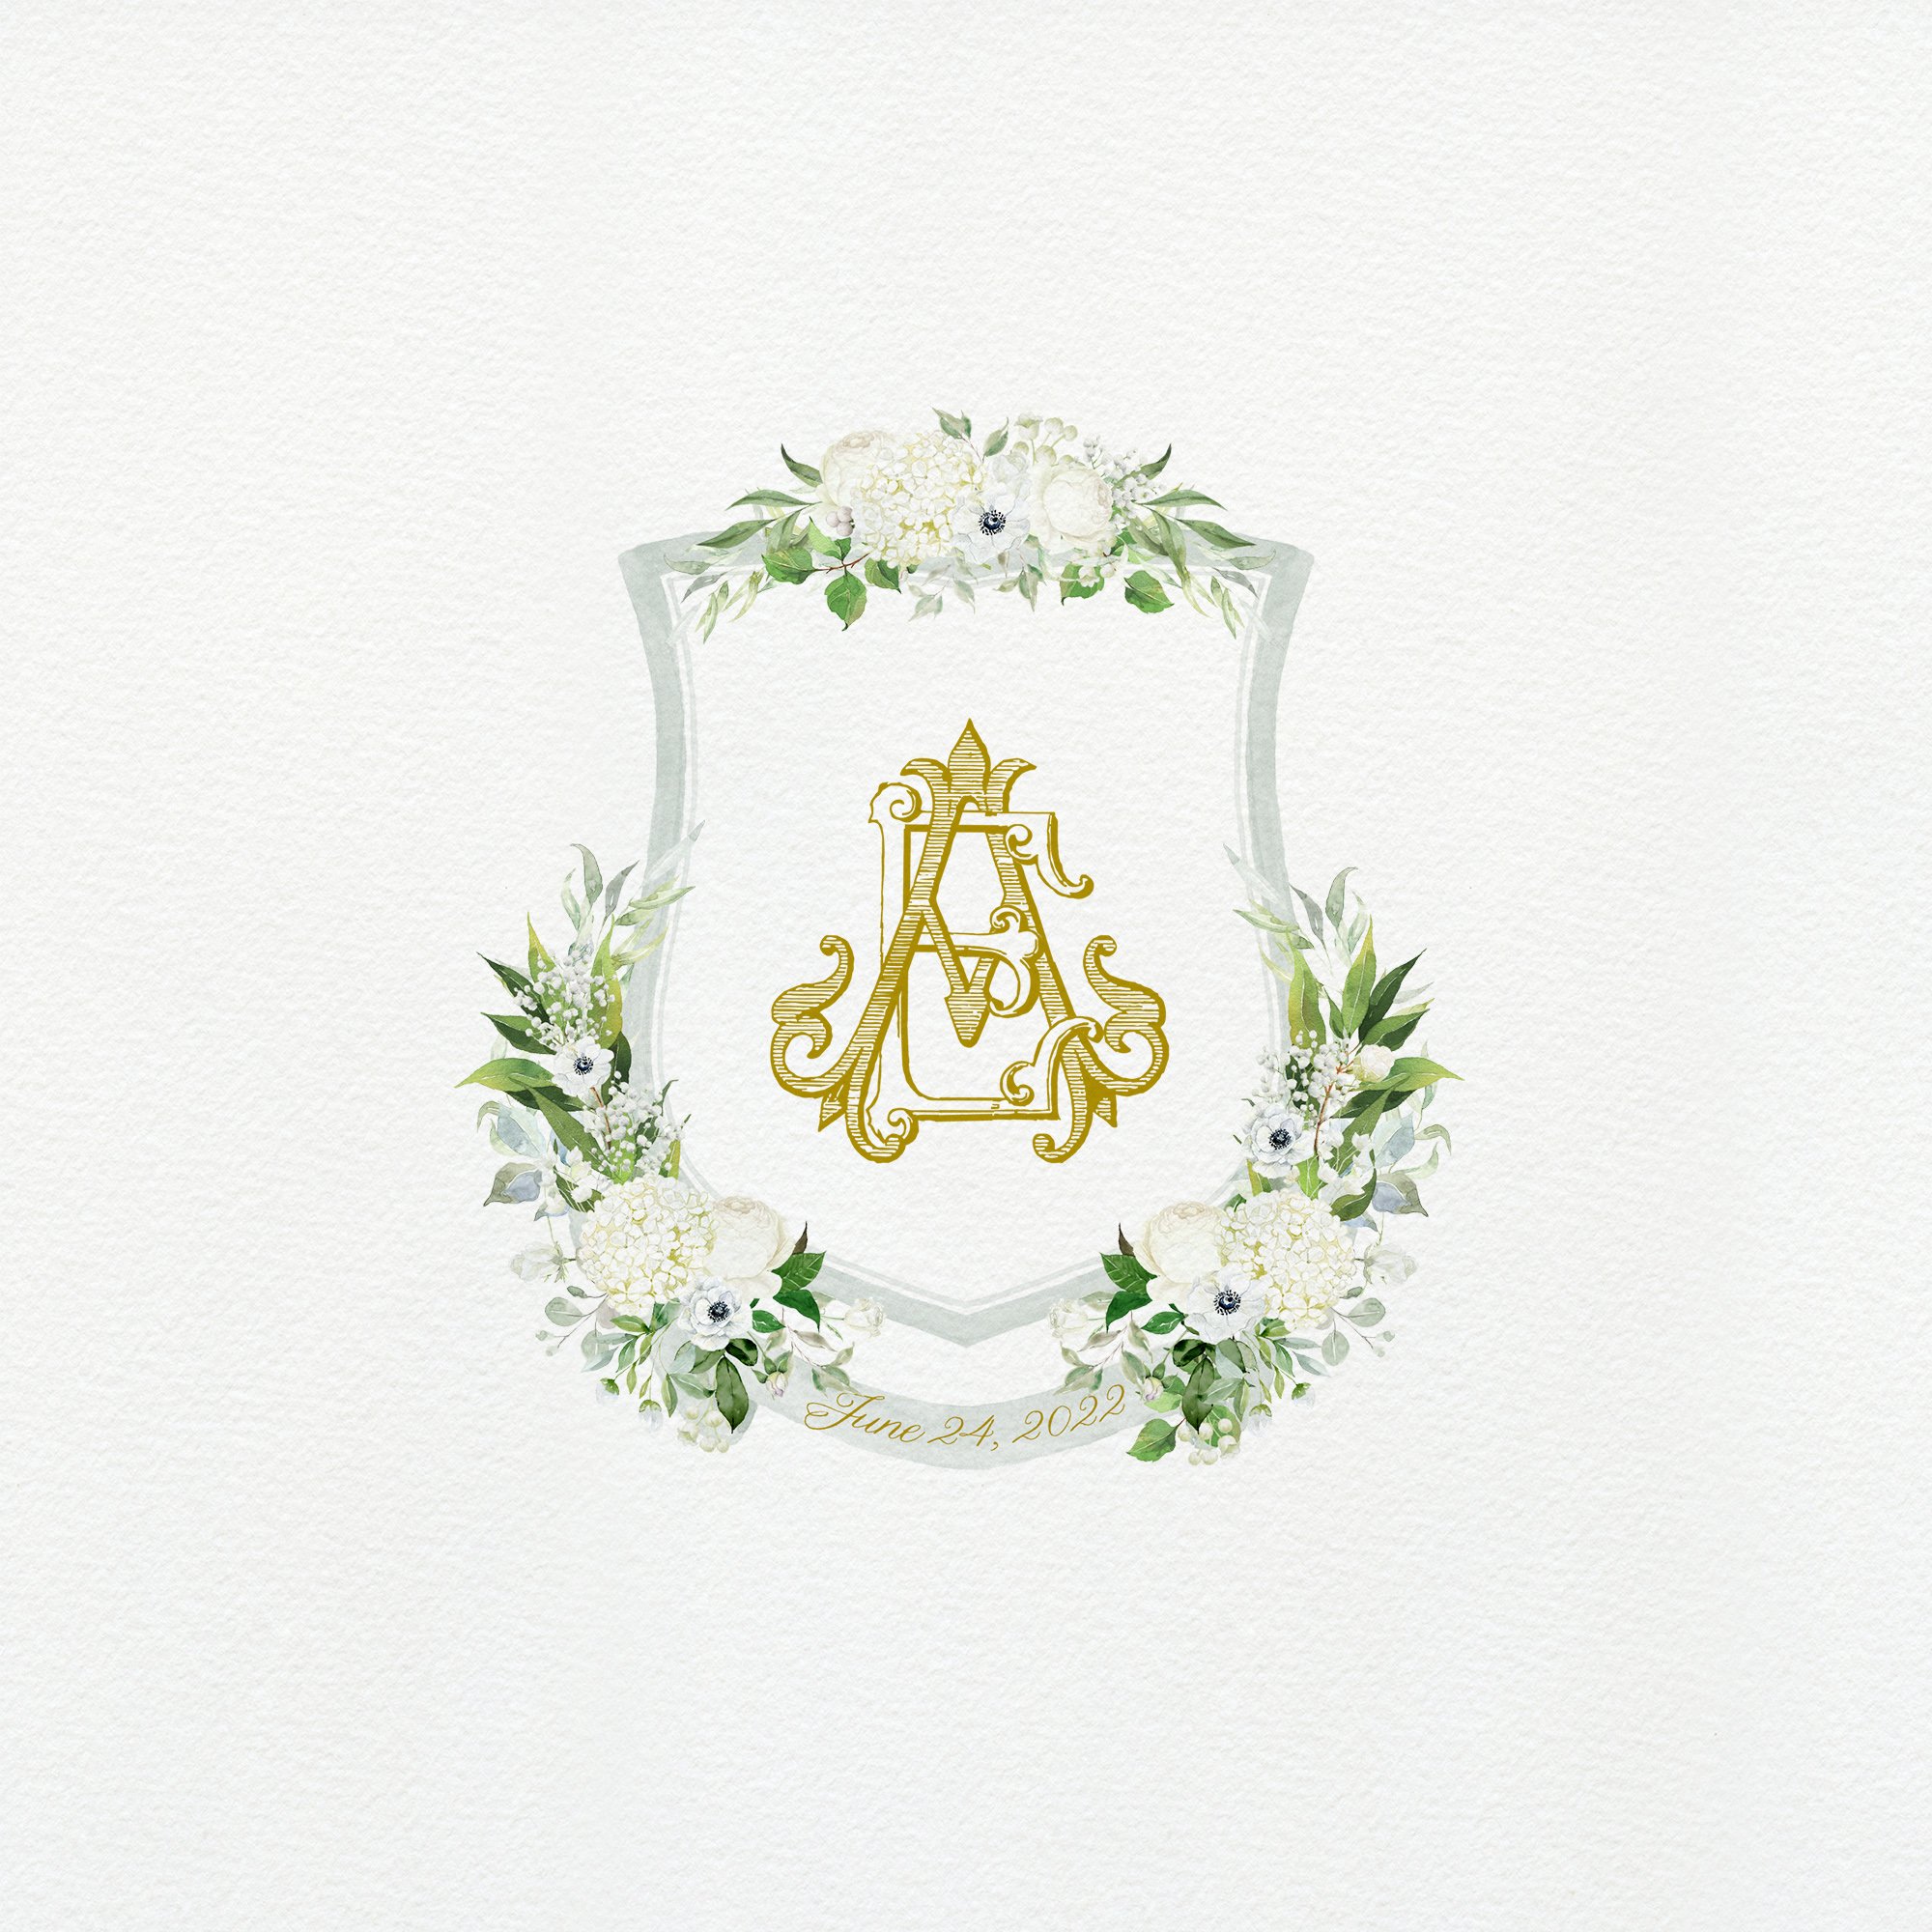 Sage and Anemone Wedding Crest.jpg